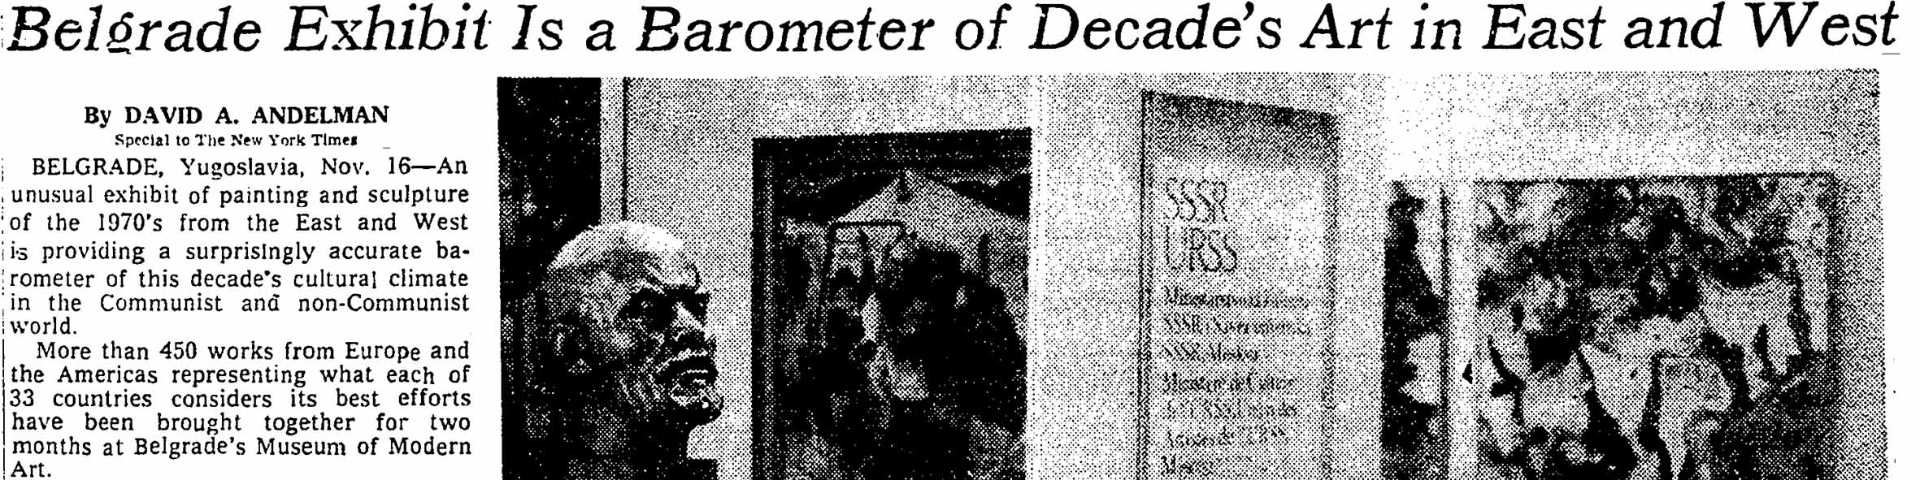 Београдски барометар светске културне климе: Ликовни ОЕБС о коме је варљиве јесени 1977. писао и „Њујорк тајмс“